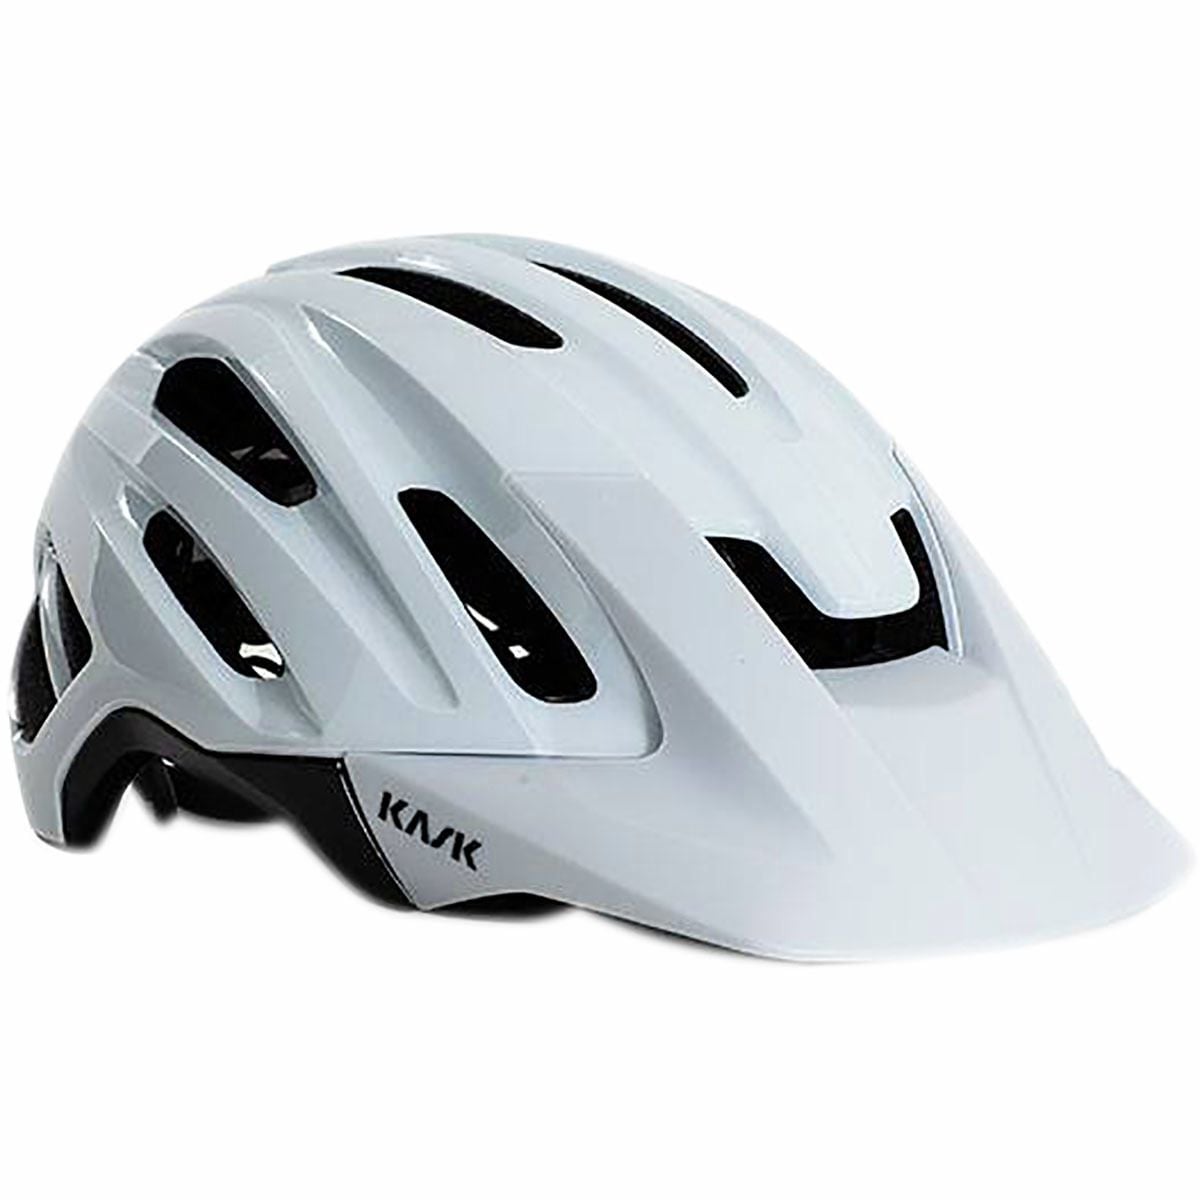 Велосипедный шлем caipi Kask, белый